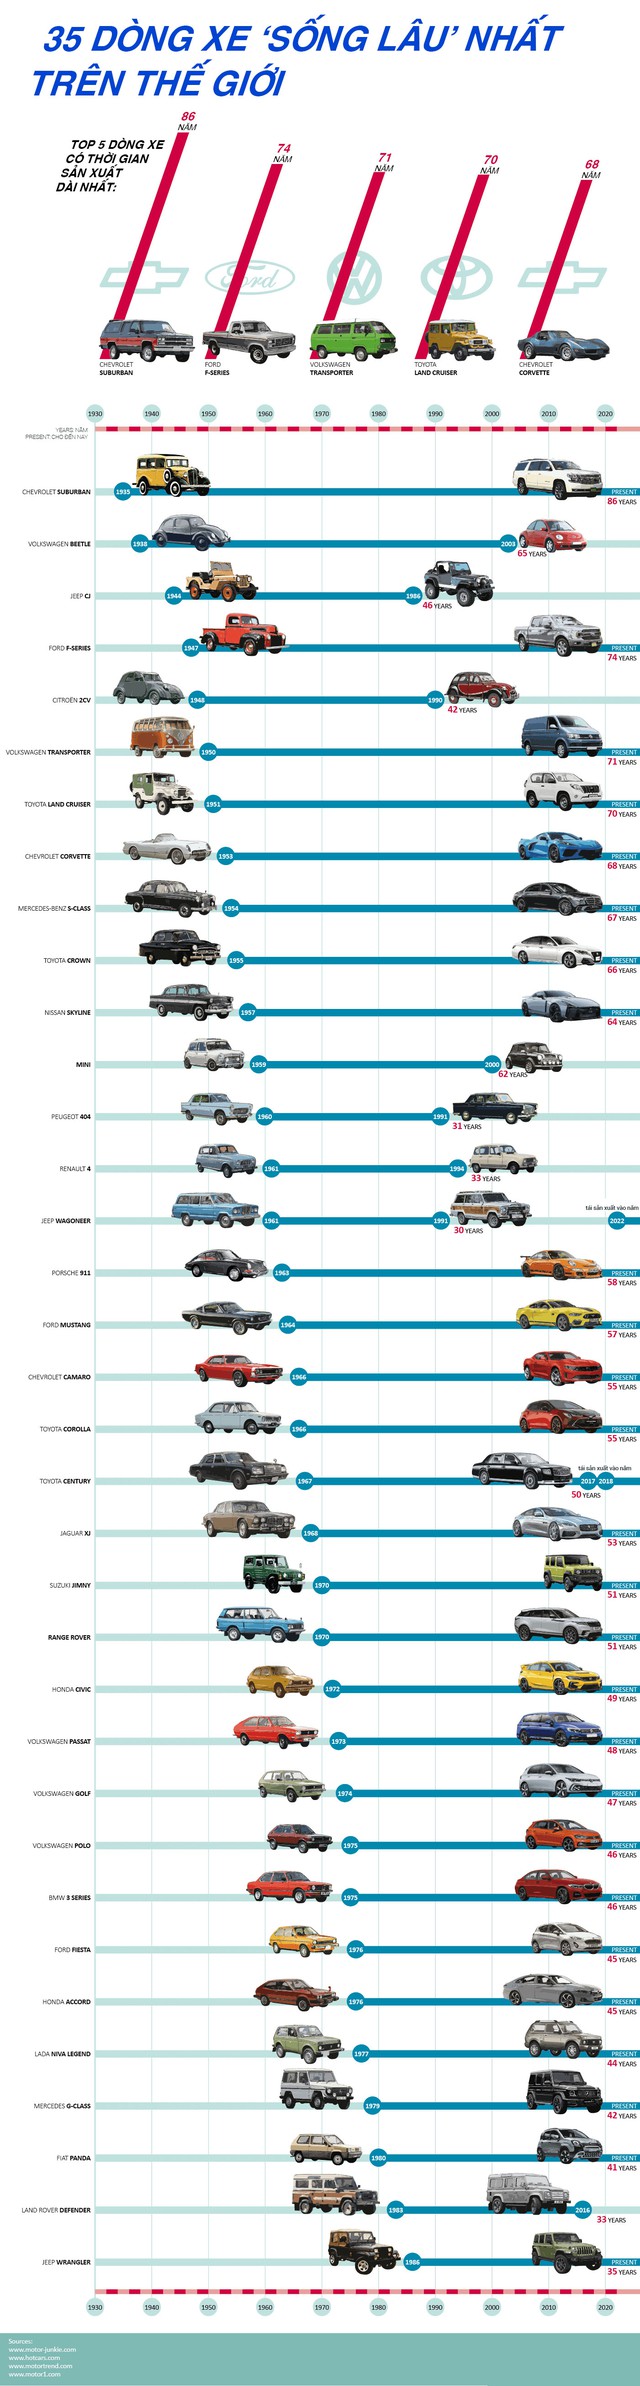 35 xe ôtô sống lâu nhất thế giới - Ảnh 1.